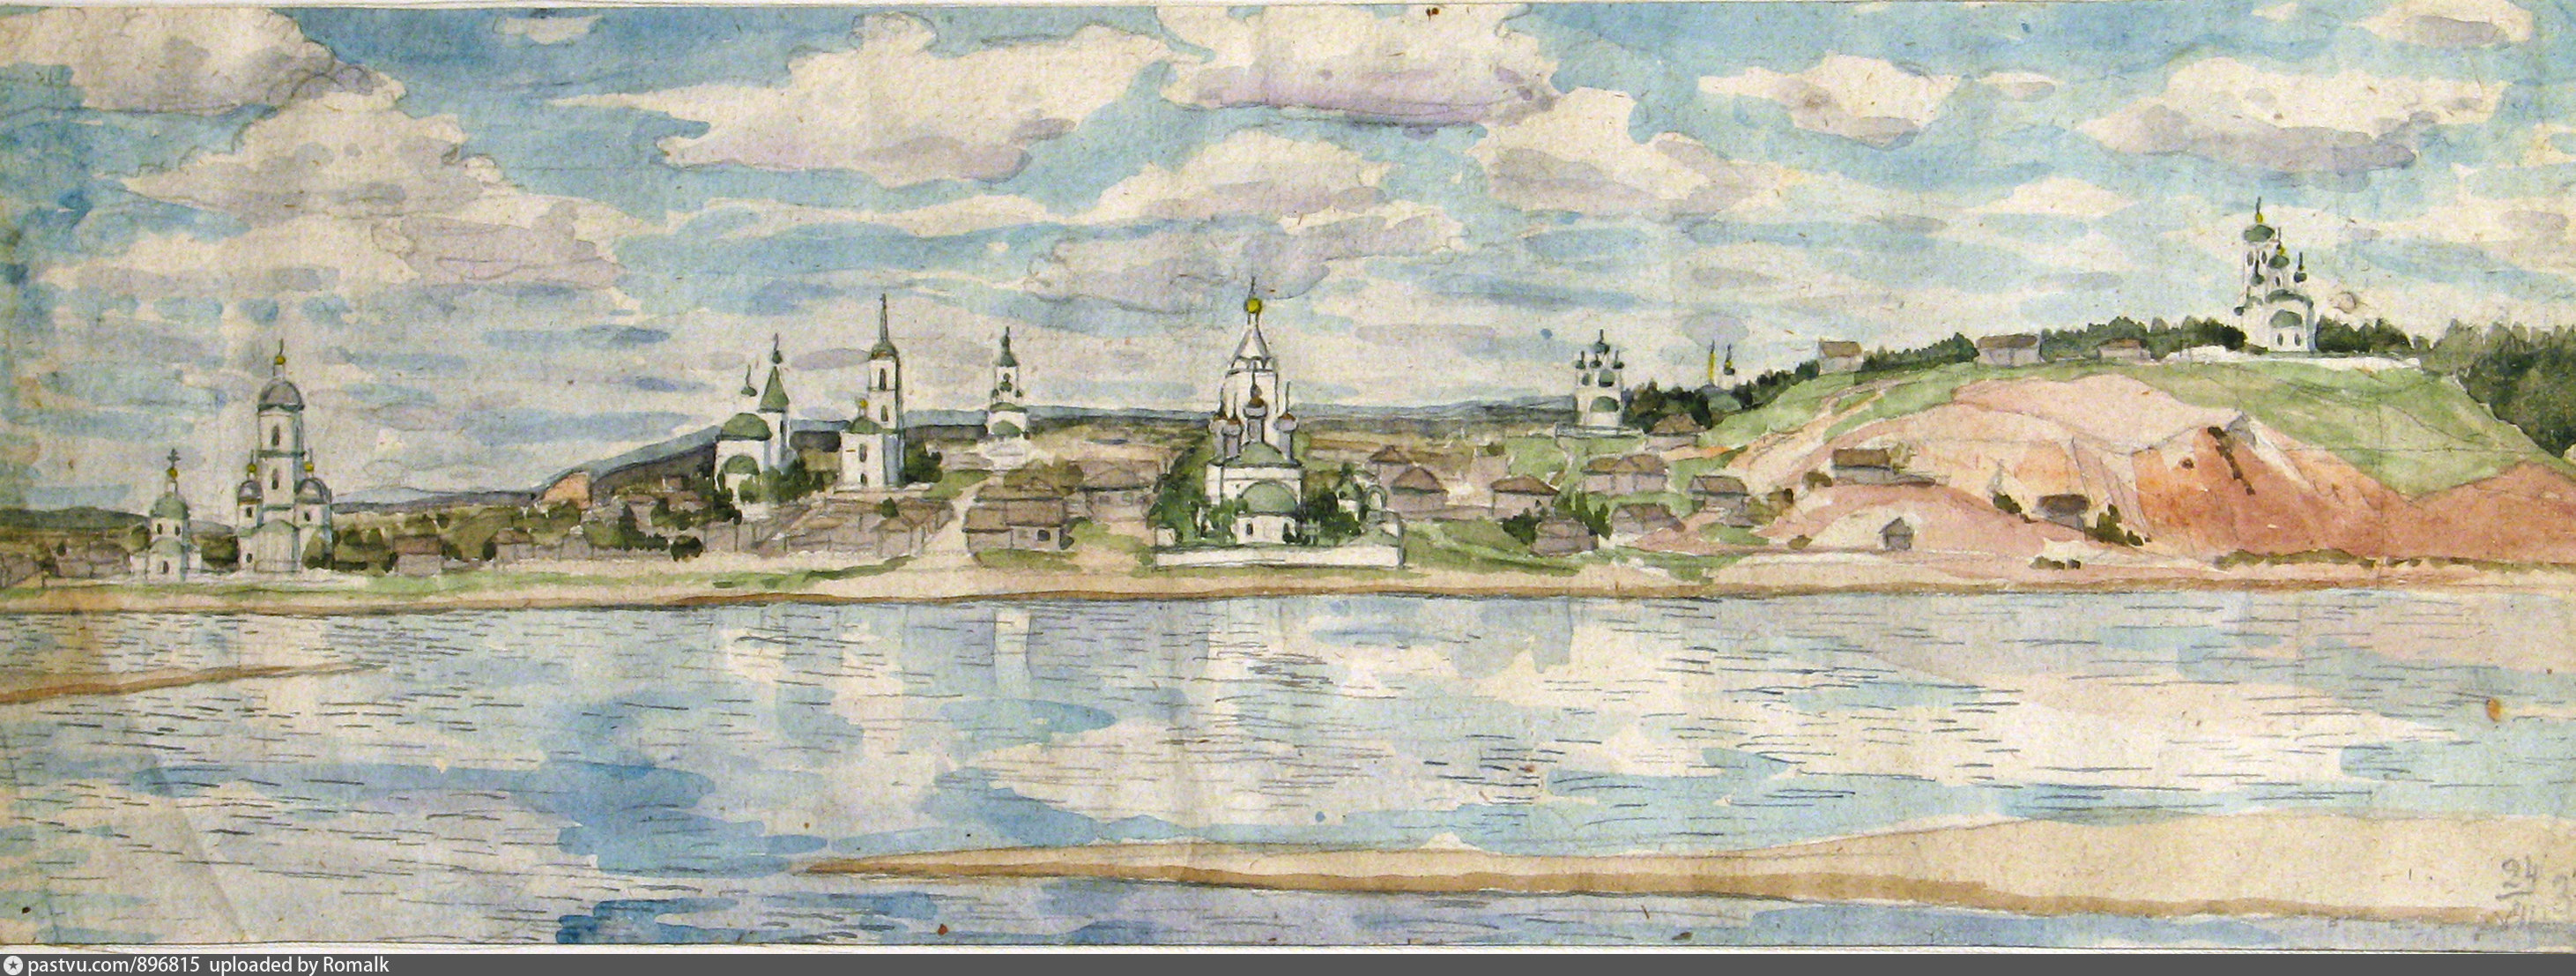 Село Вознесенское Сарапул рисунок